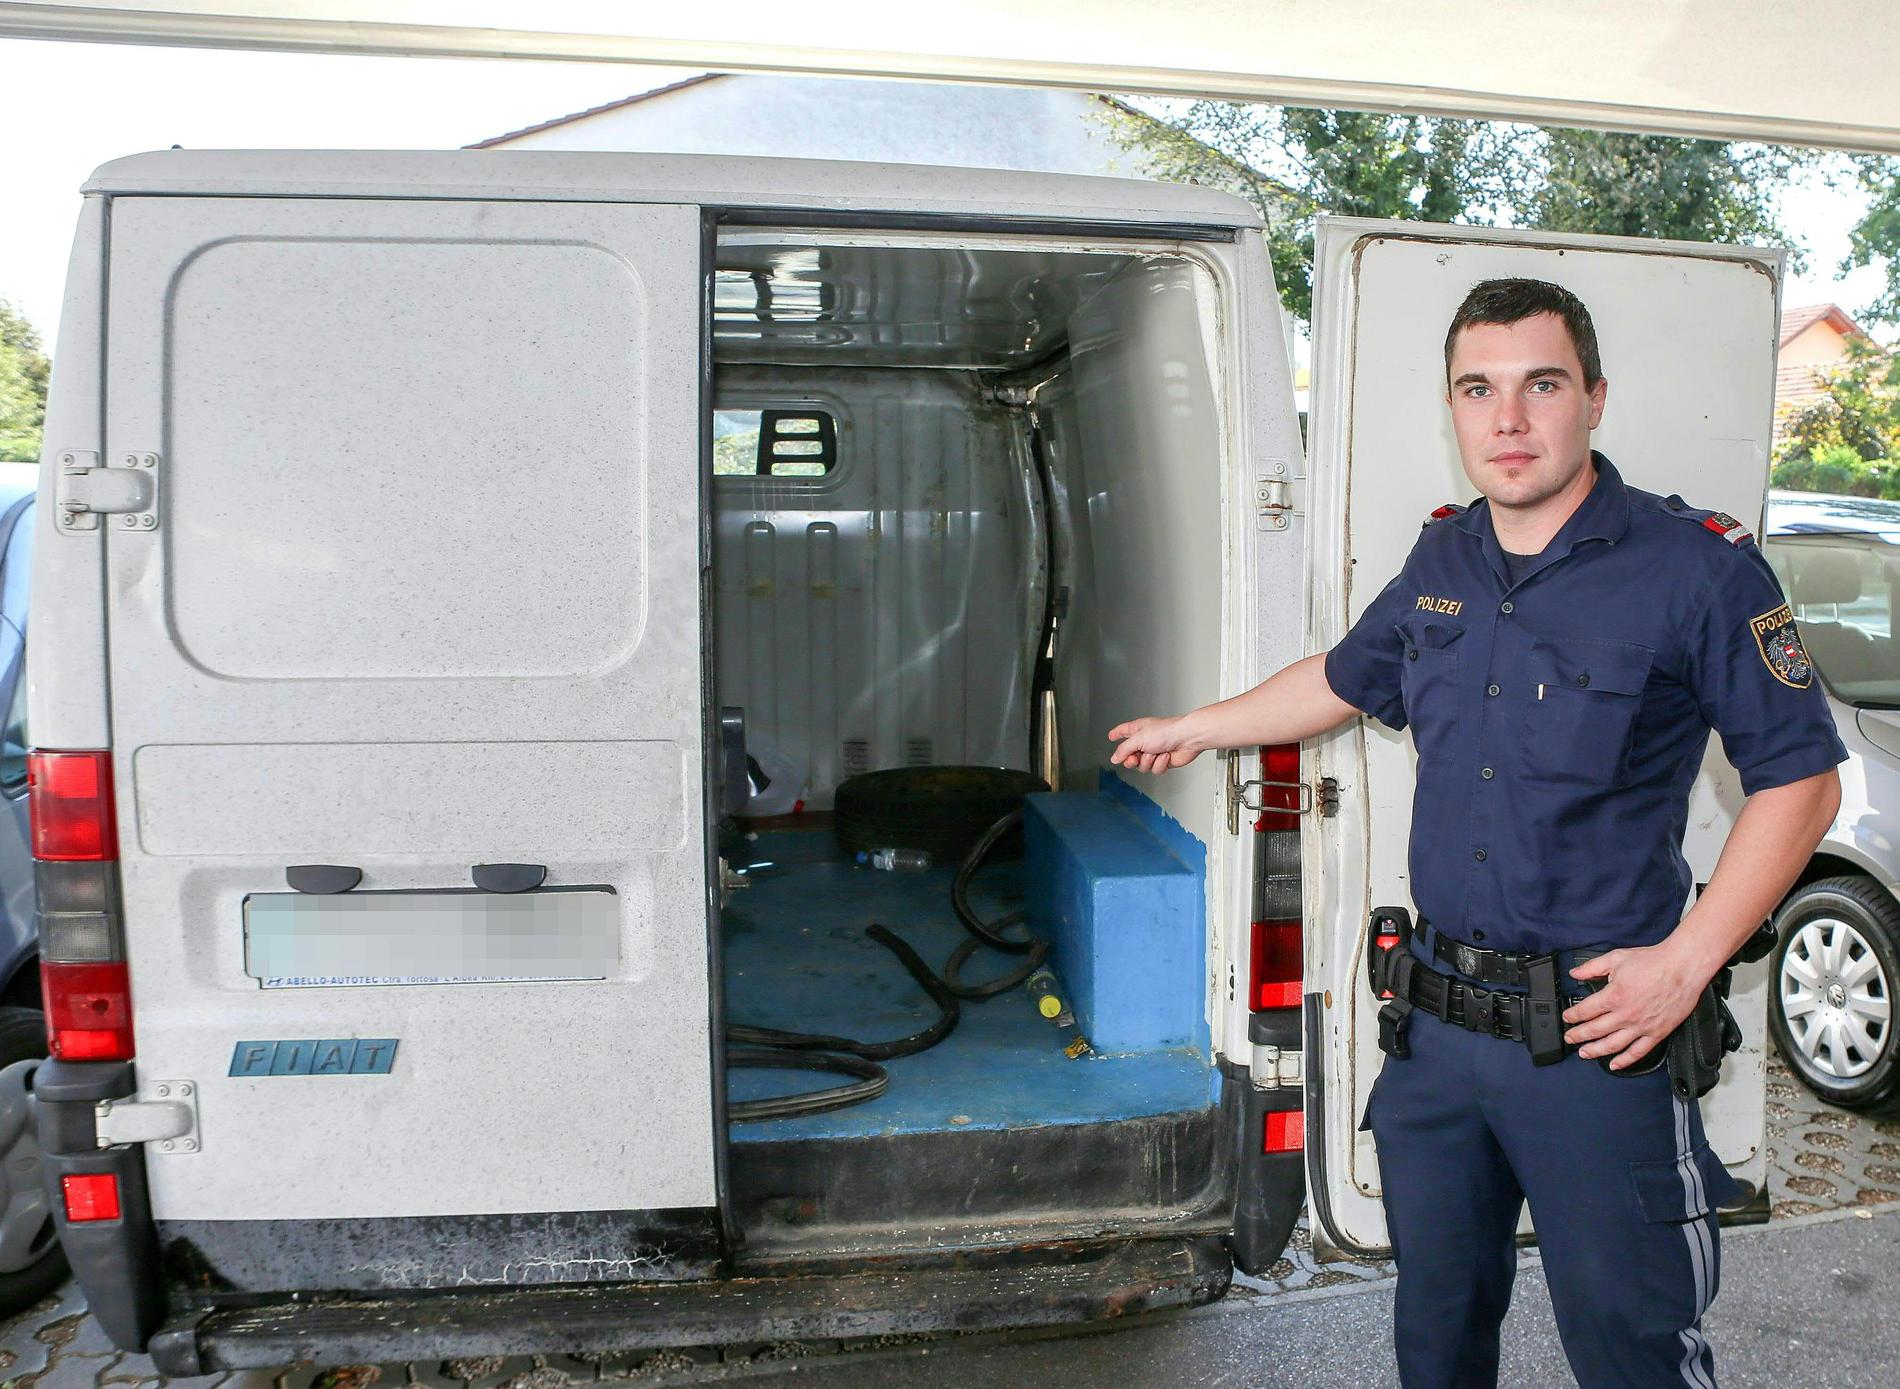 En polis i Österrike visar upp skåpbilen där 26 flyktingar hittades instängda.